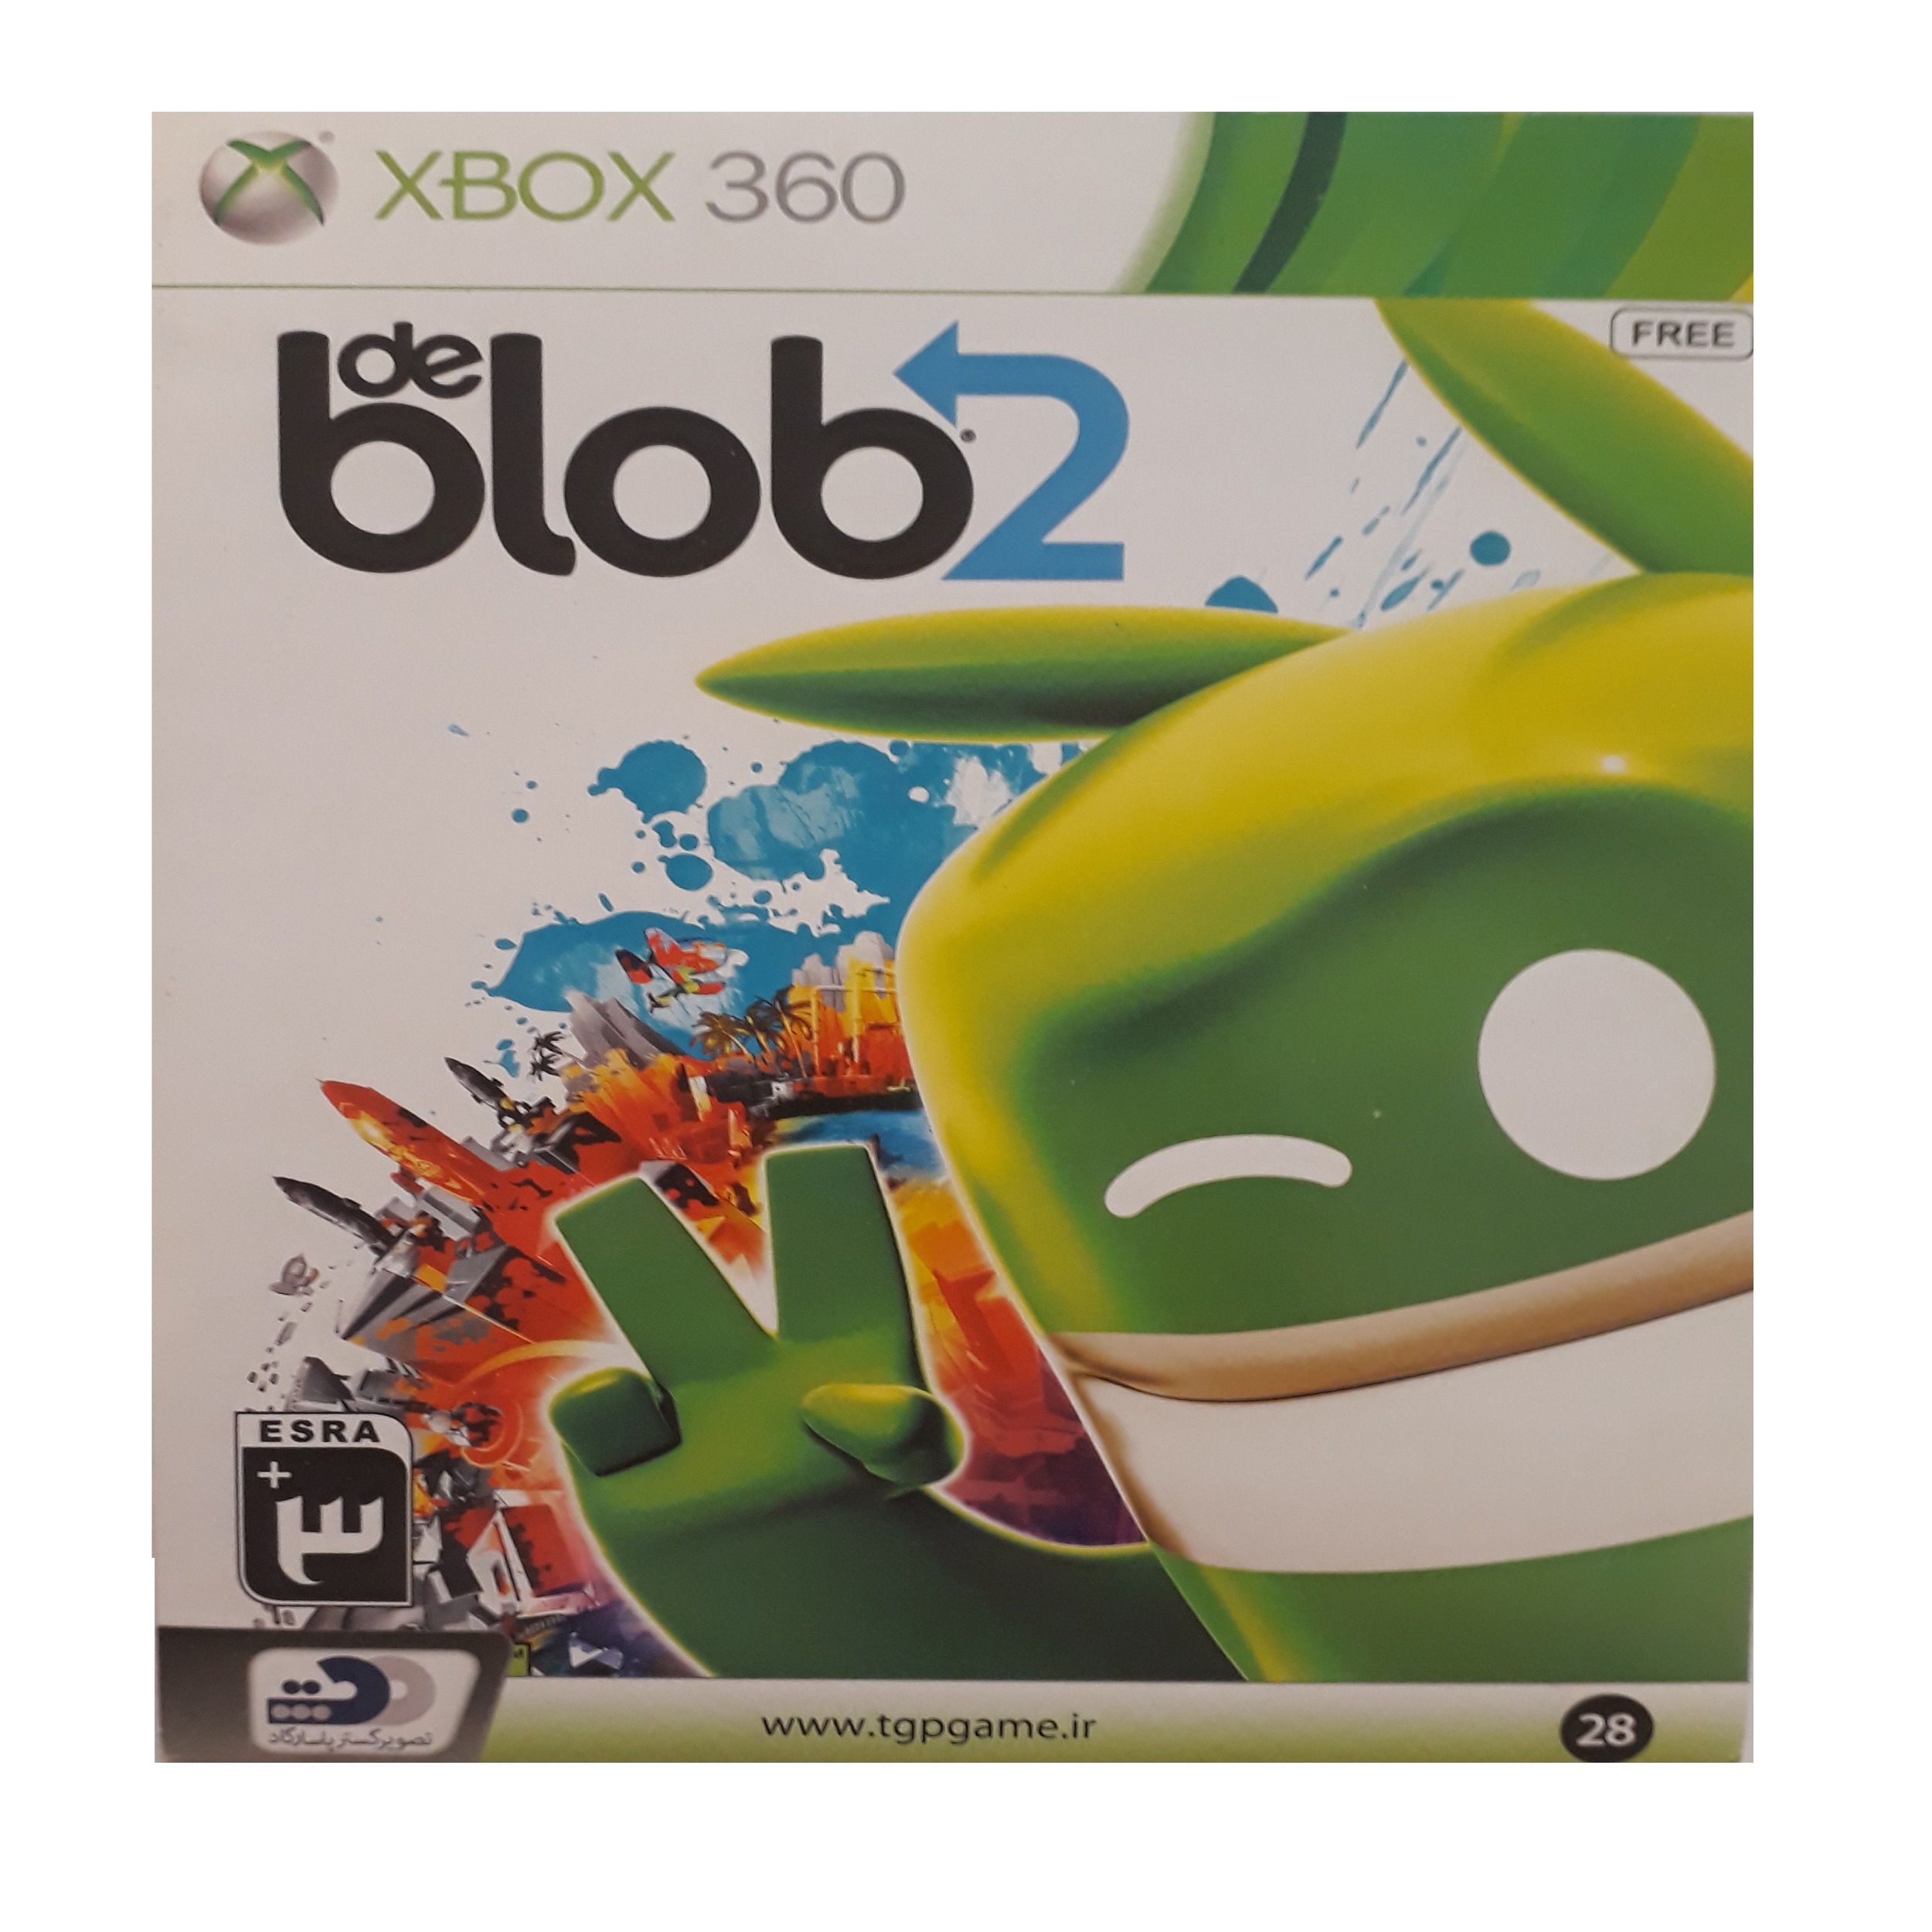 بازی de blob 2 مخصوص xbox 360